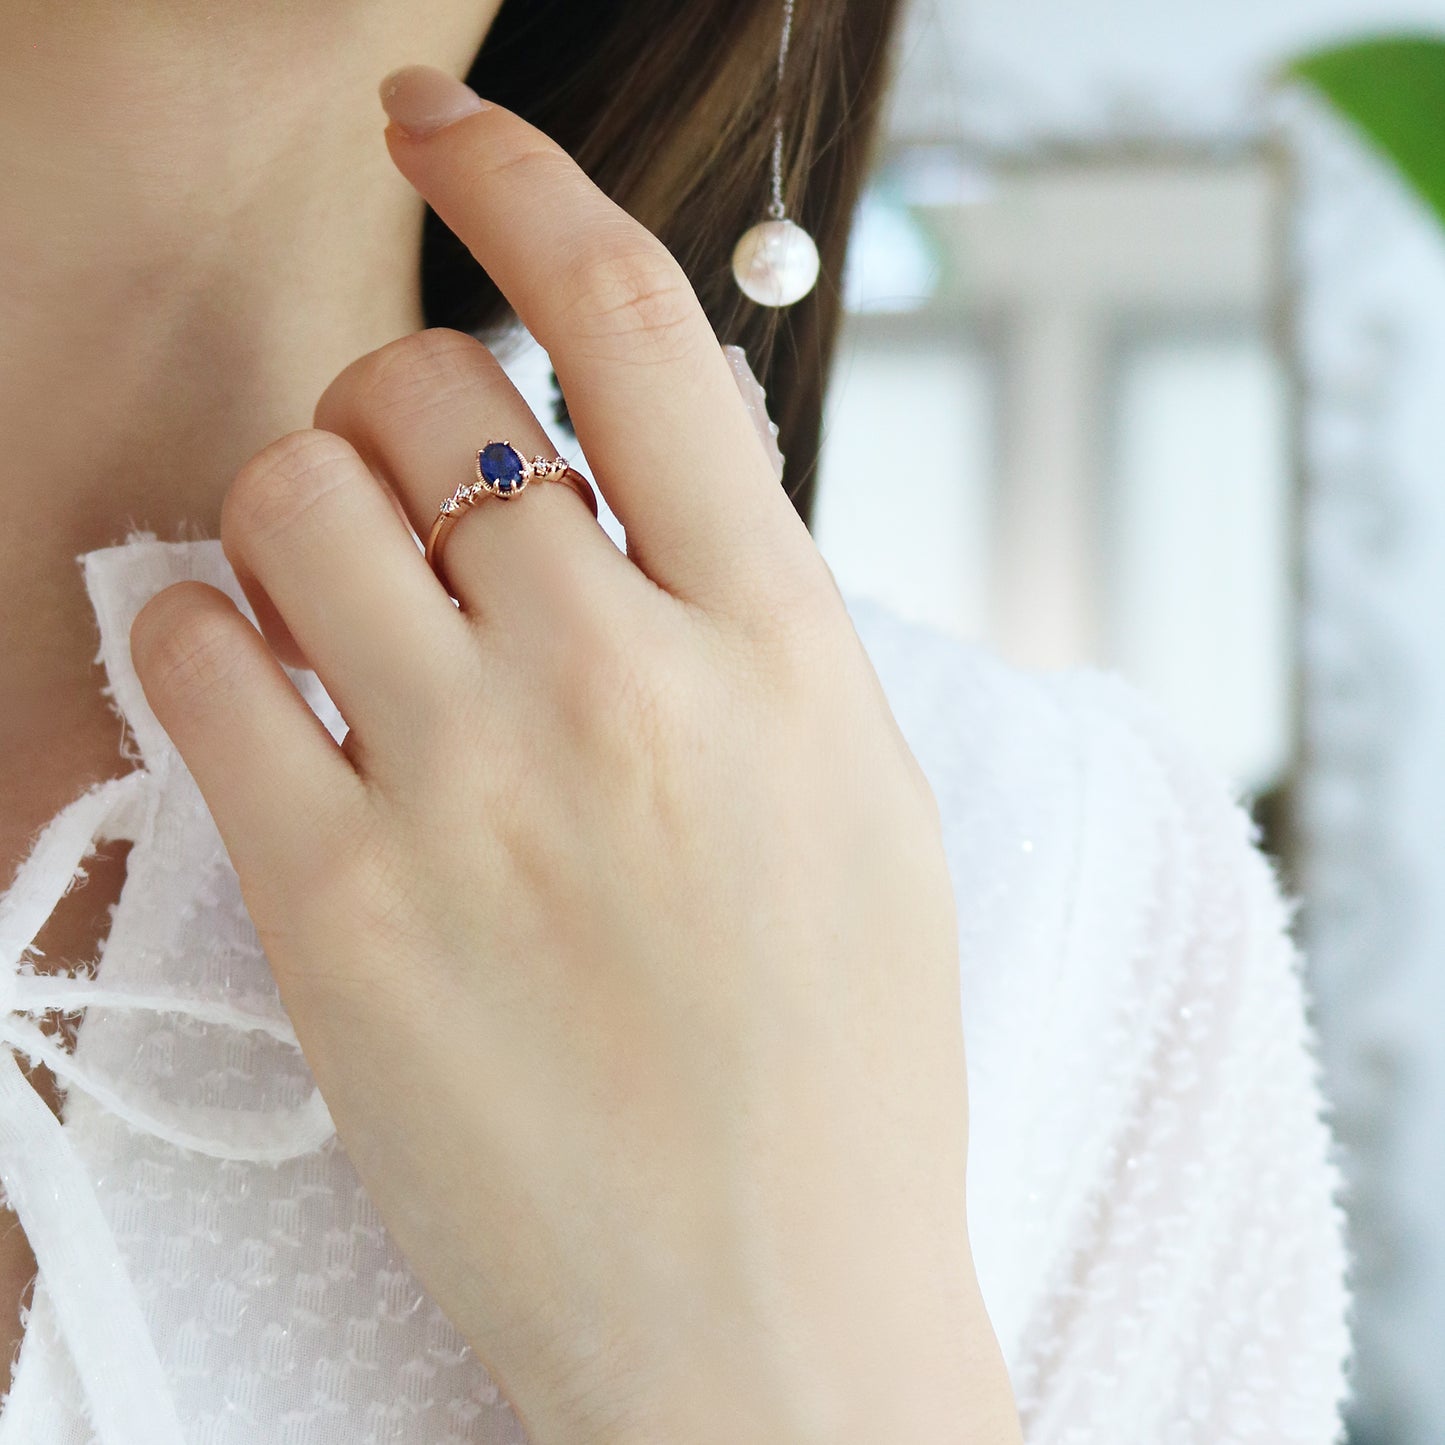 藍寶石鑽石戒指在中指上 Sapphire Diamond Ring on middle finger